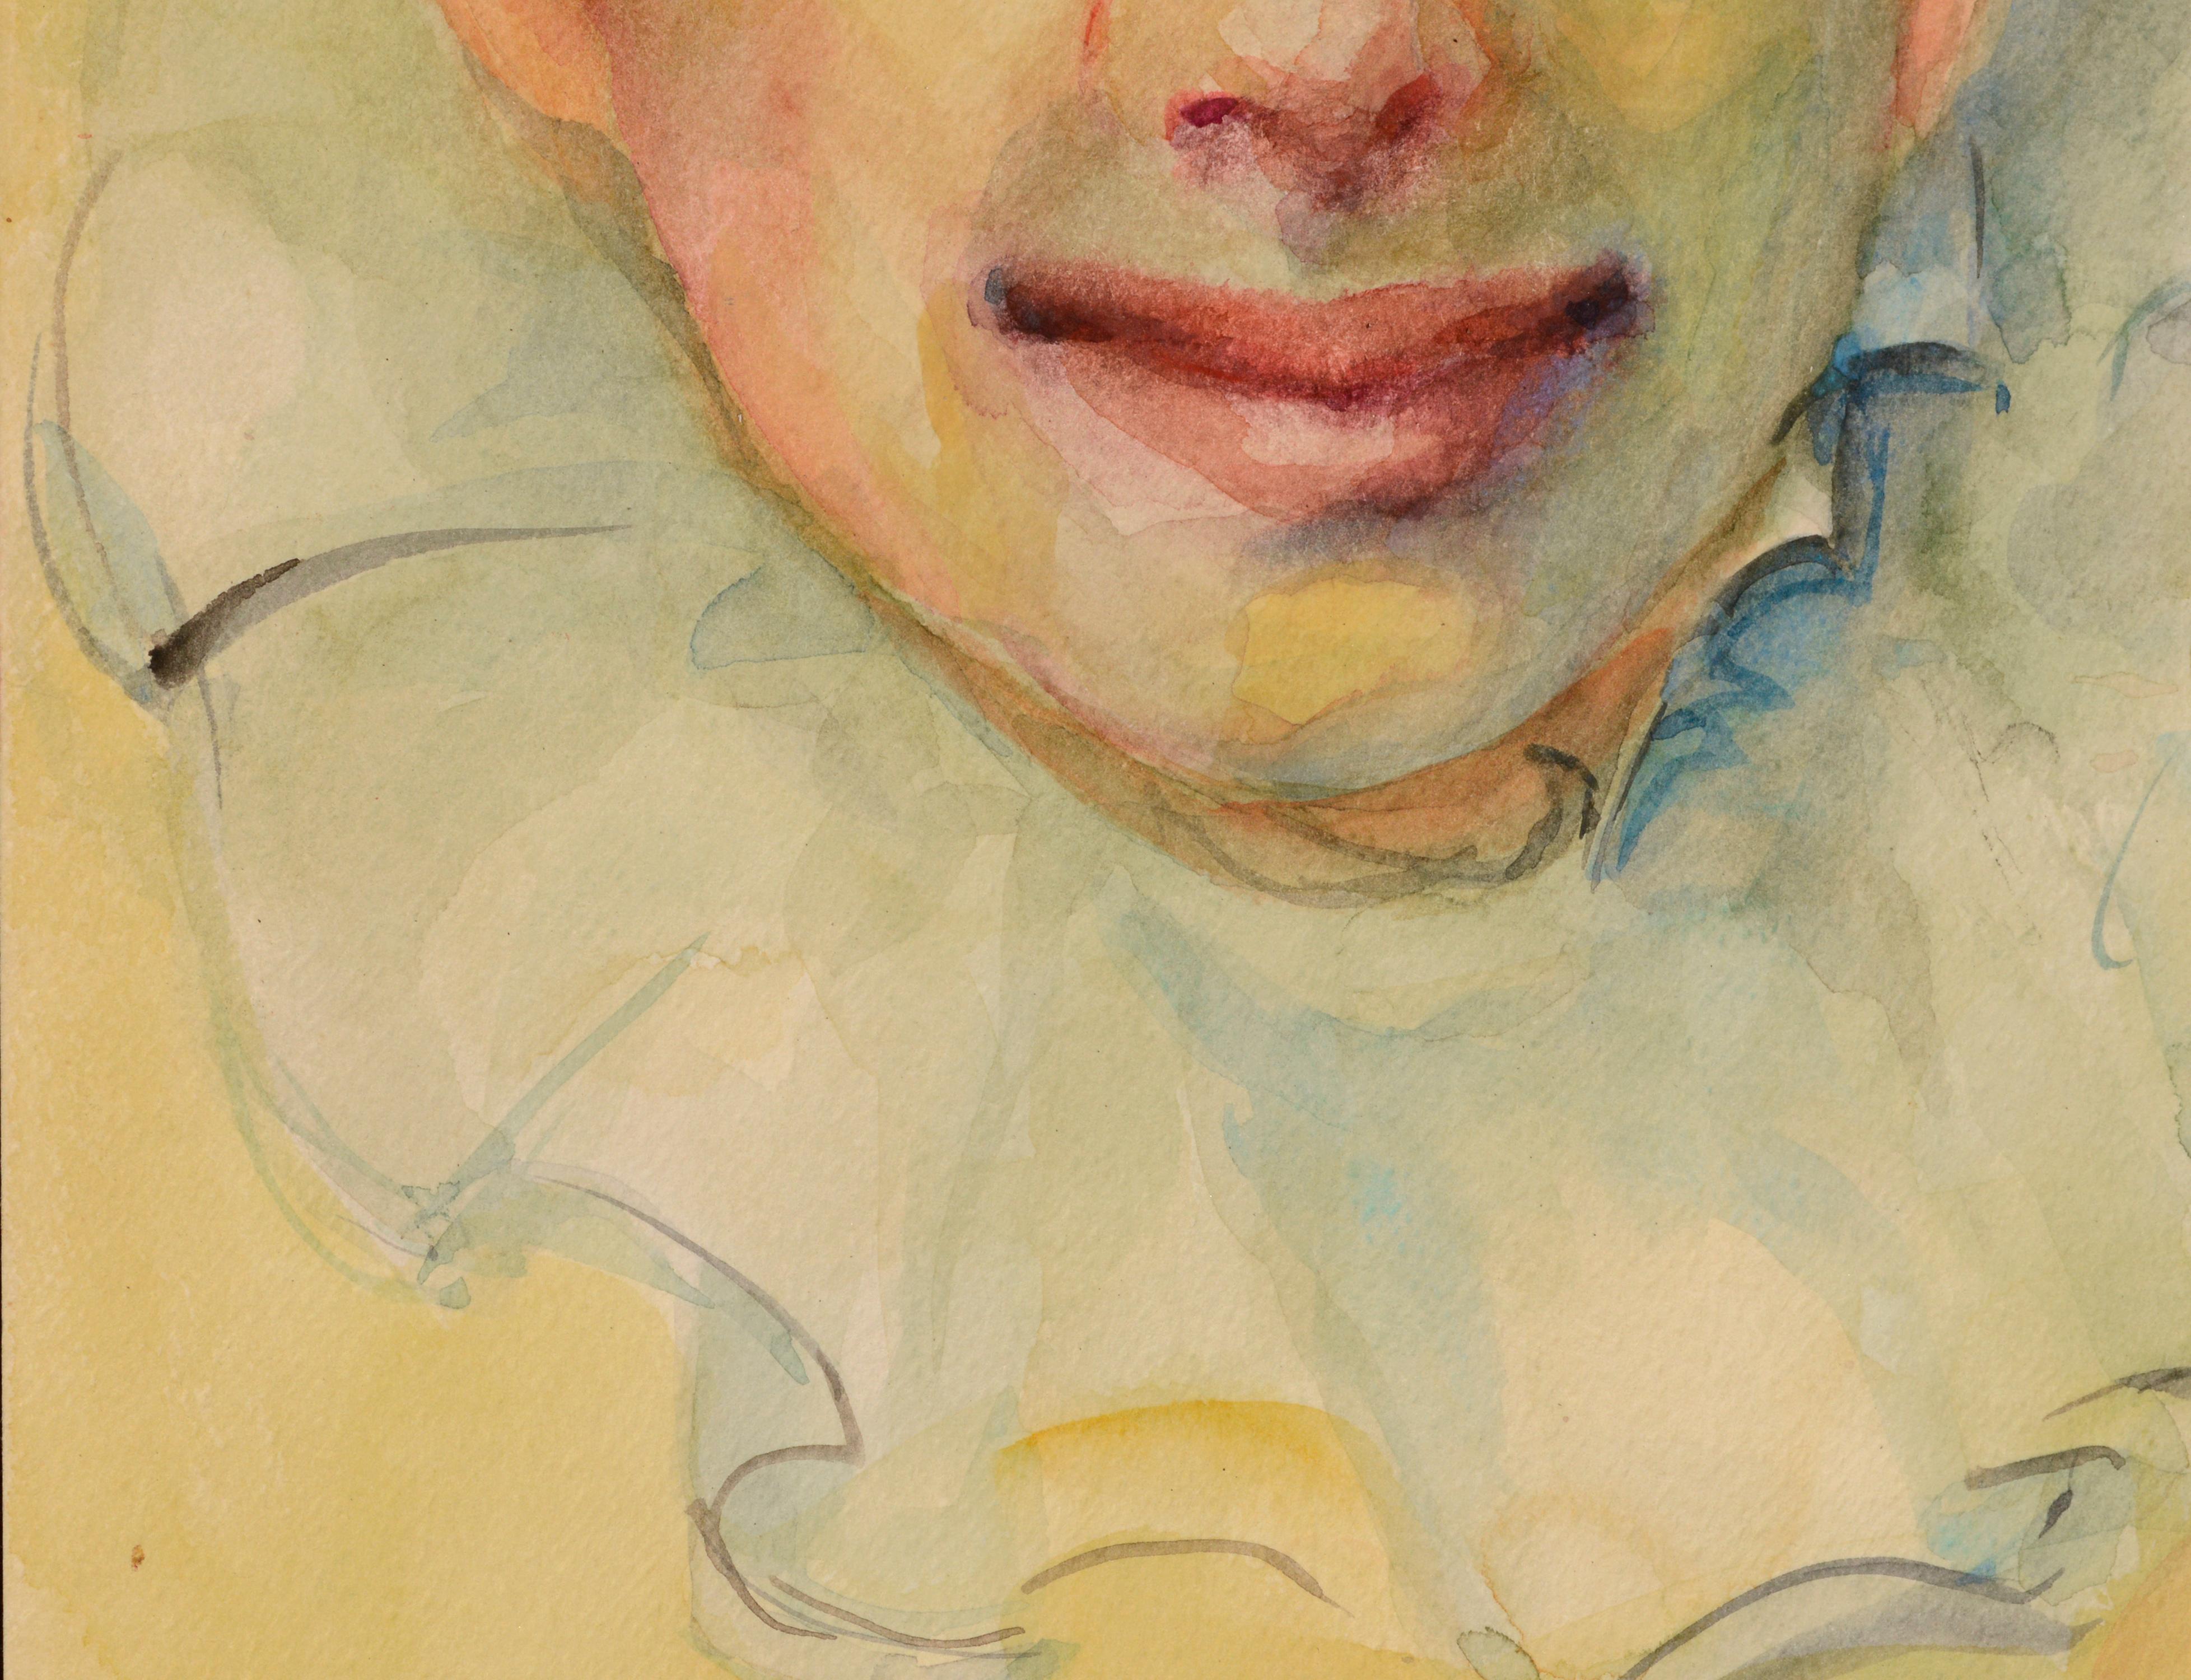 Portrait à l'aquarelle d'un clown sur papier épais par Marjorie and Marjorie Blake (américaine, 1920-1994). Signé 